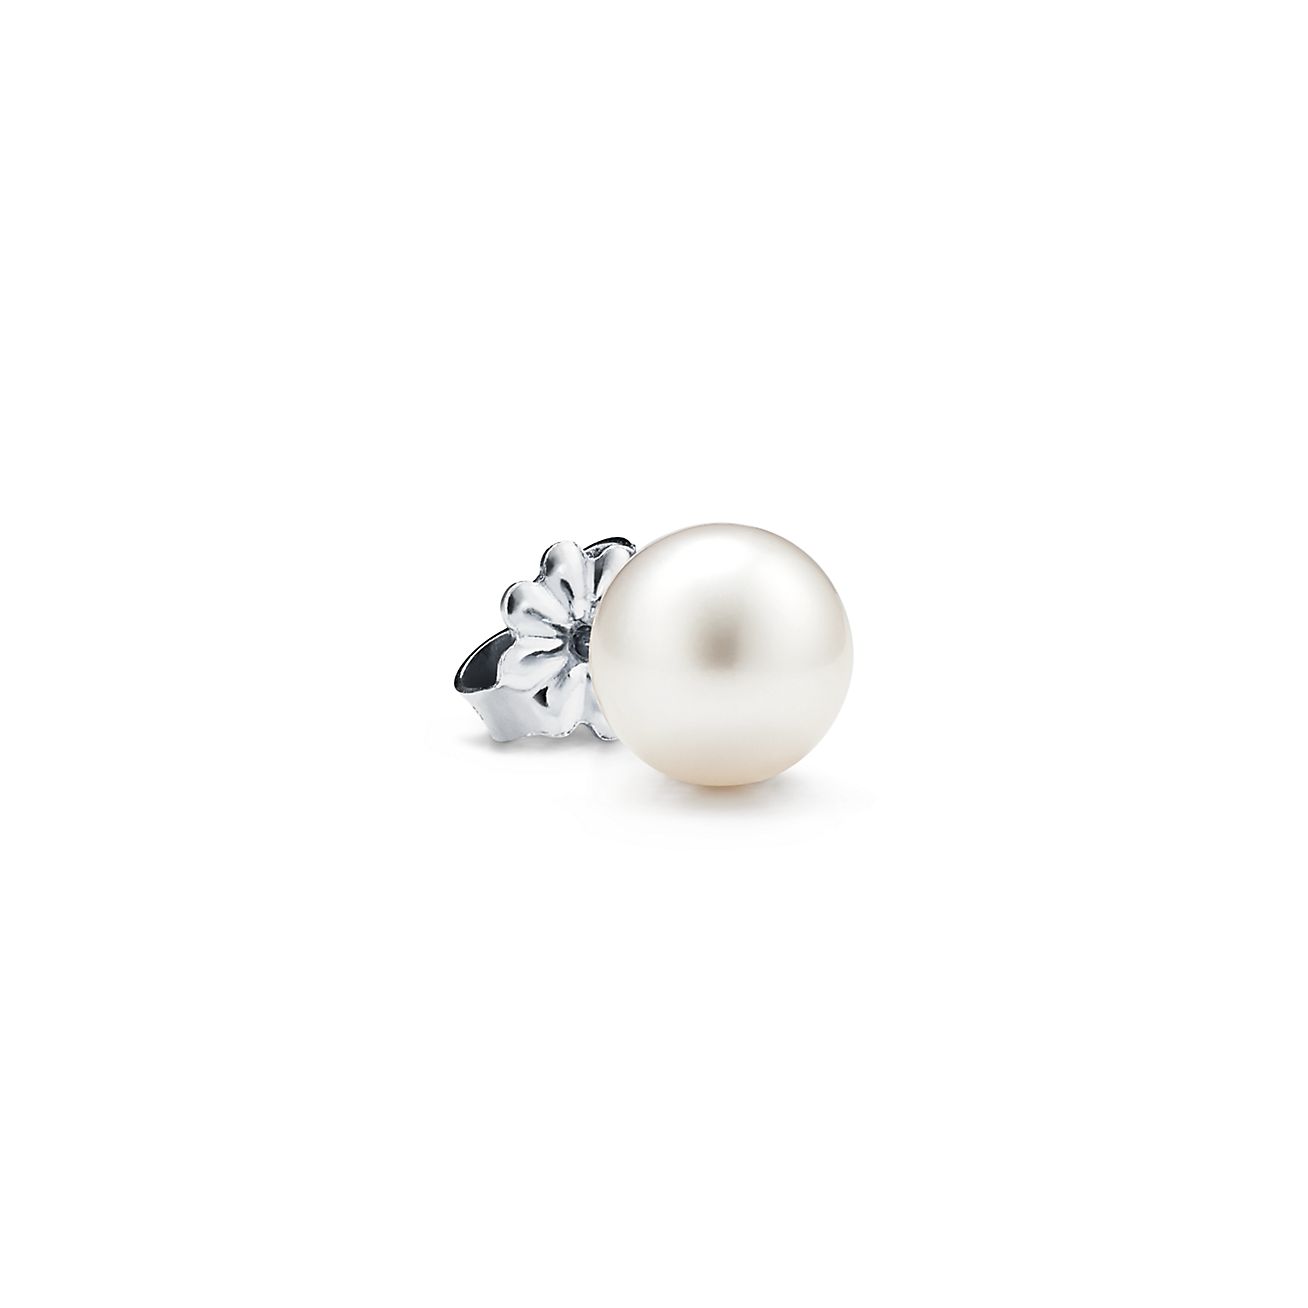 tiffany freshwater pearl earrings